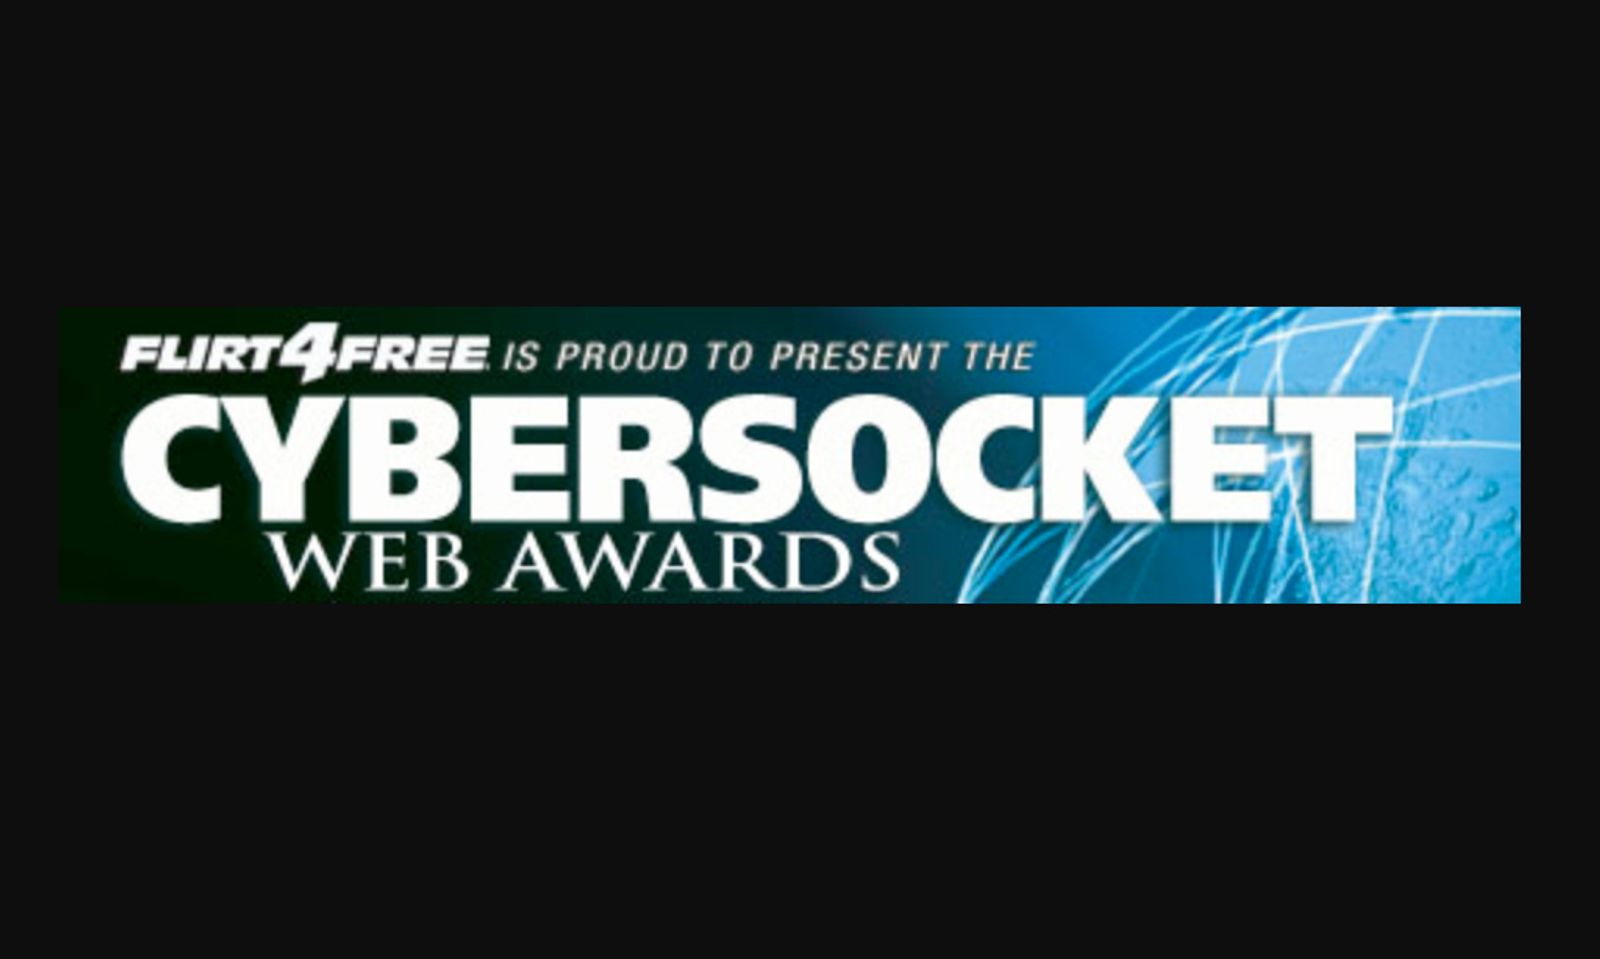 RSVPs Open for 2018 Cybersocket Web Awards